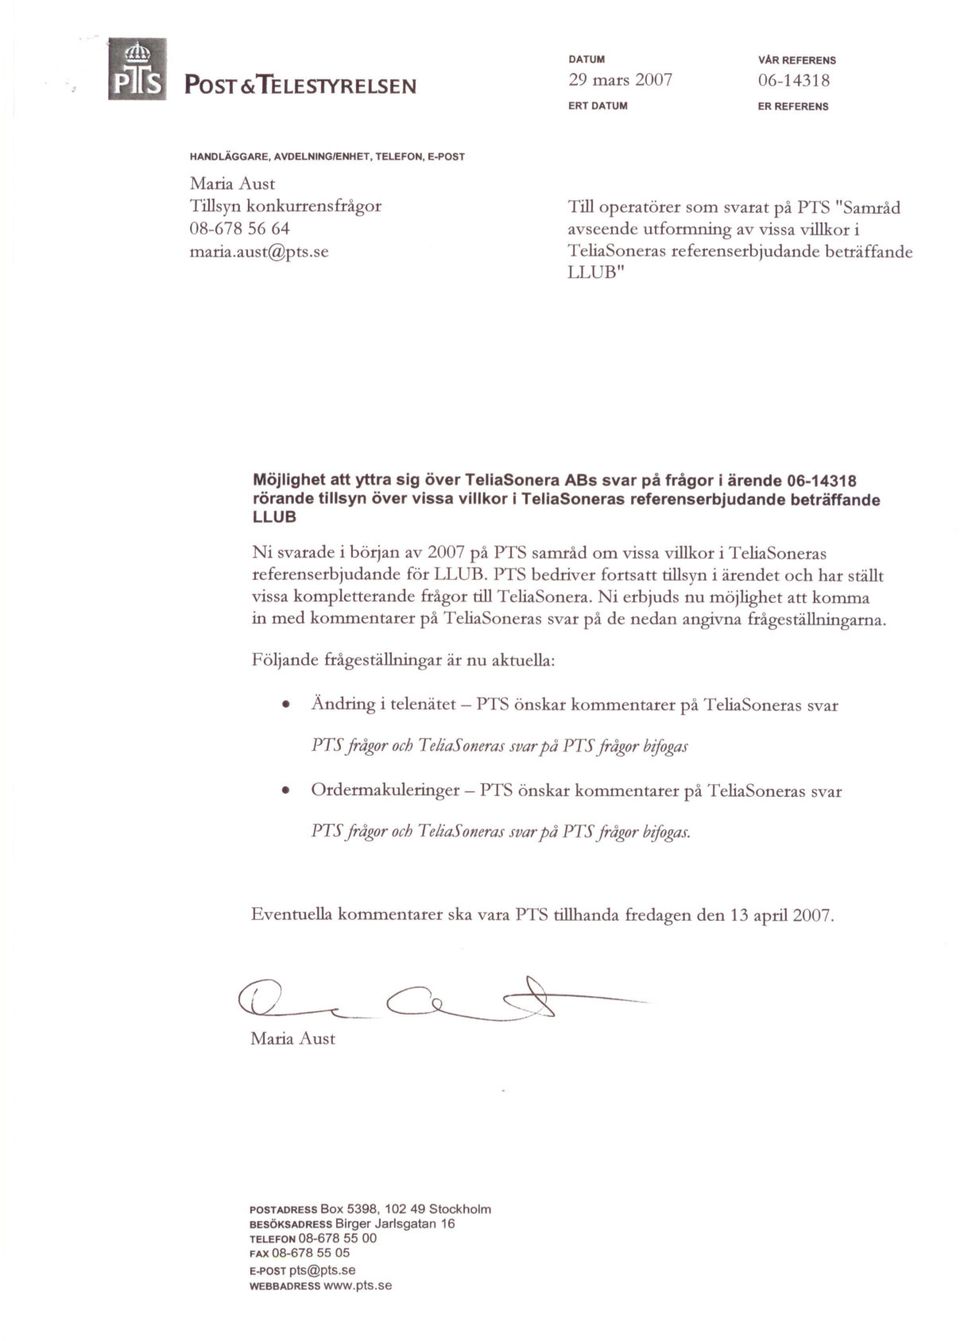 ärende 06-14318 rörande tillsyn över vissa villkor i TeliaSoneras referenserbjudande beträffande LLUB Ni svarade i början av 2007 på PTS samråd om vissa villkor i TeliaSoneras referenserbjudande för